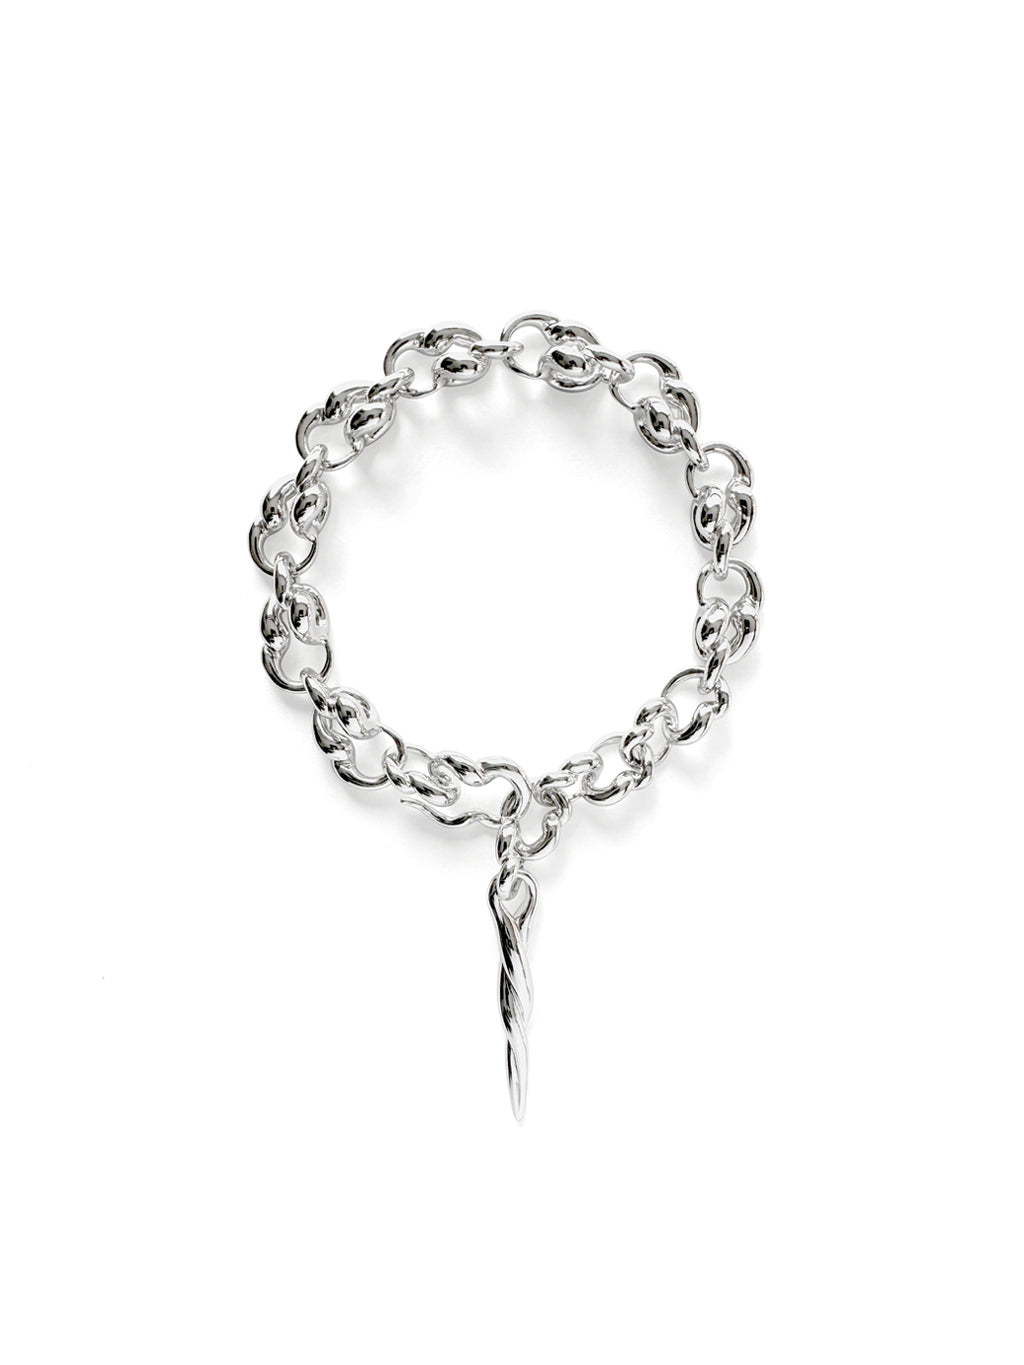 REVERSE Chain Bracelet, size I